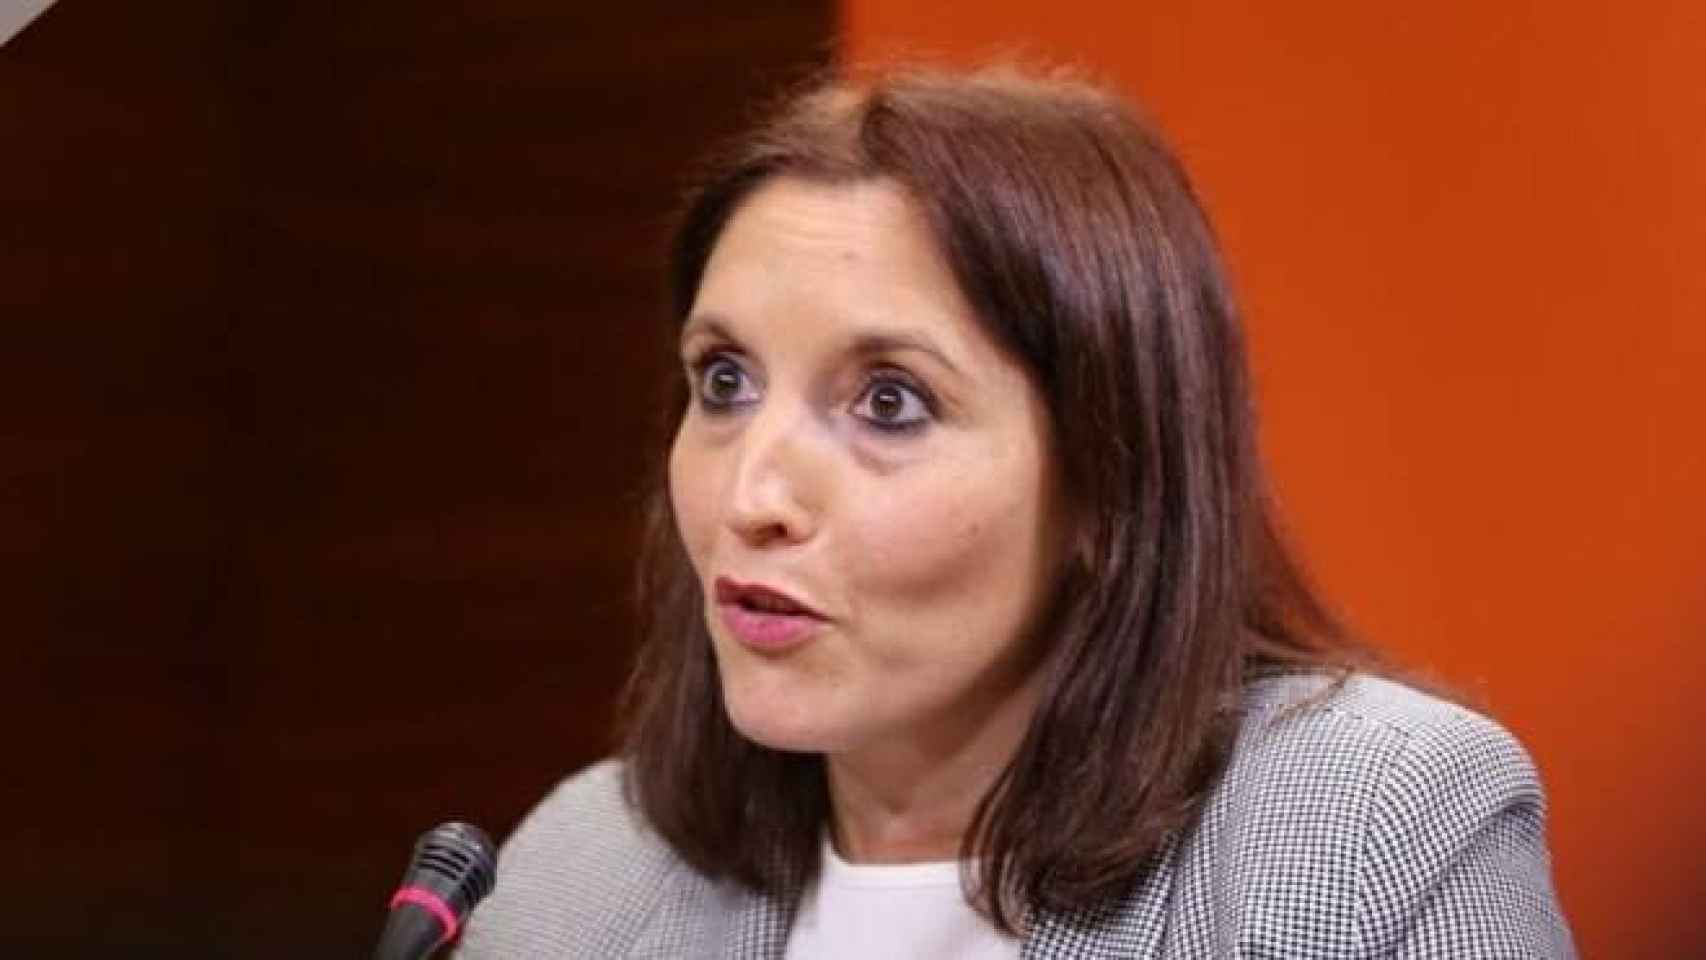 Verónica Soto, concejal no adscrita del ayuntamiento de Seseña (Toledo)